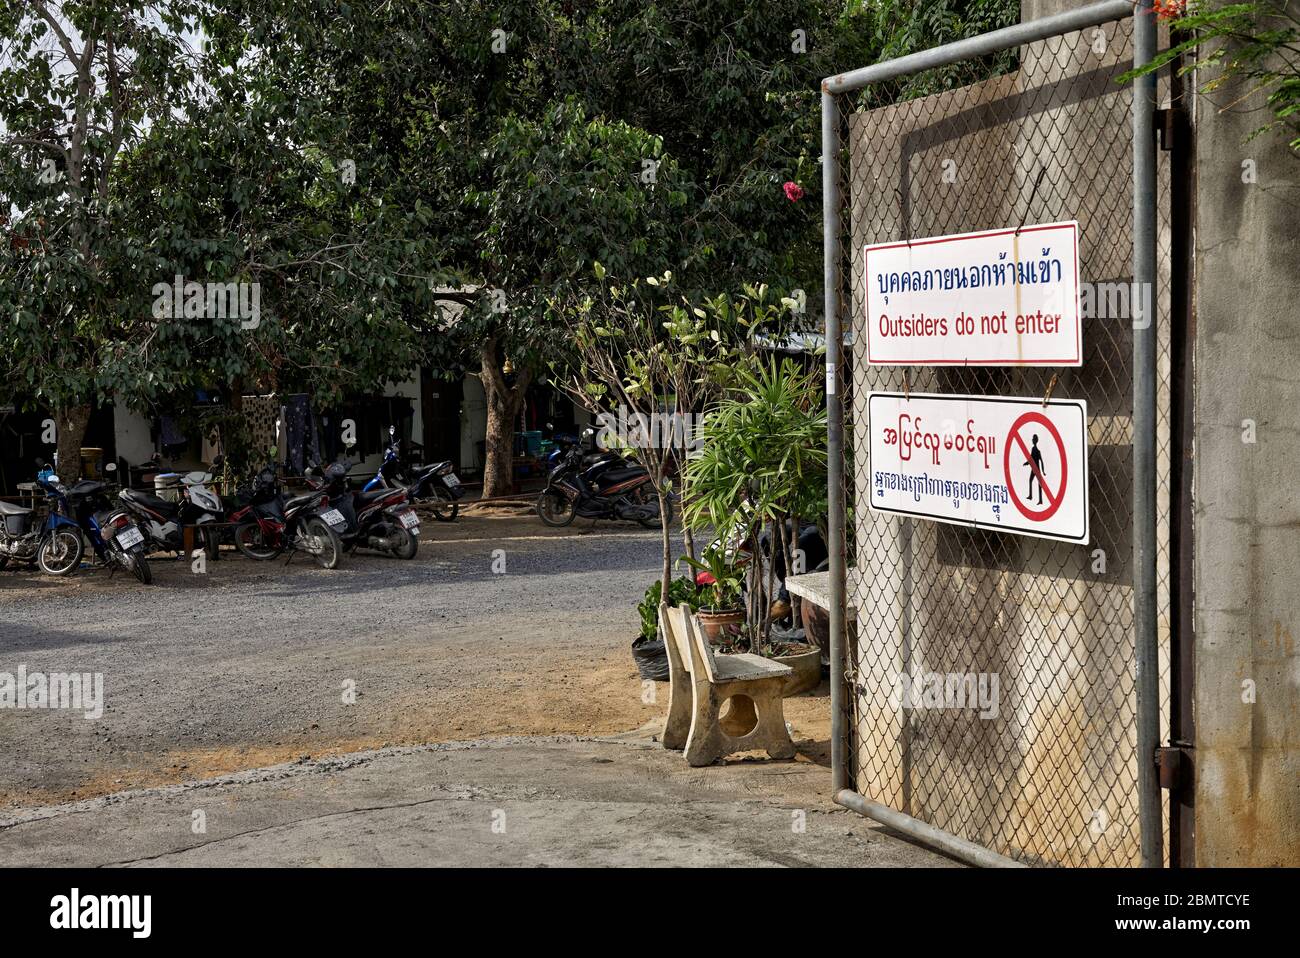 Covid-19-Einschränkungen. Kein Eintritt mehrsprachiges Schild für Außenstehende am Eingang zum Dorf Thailand. Südostasien Stockfoto